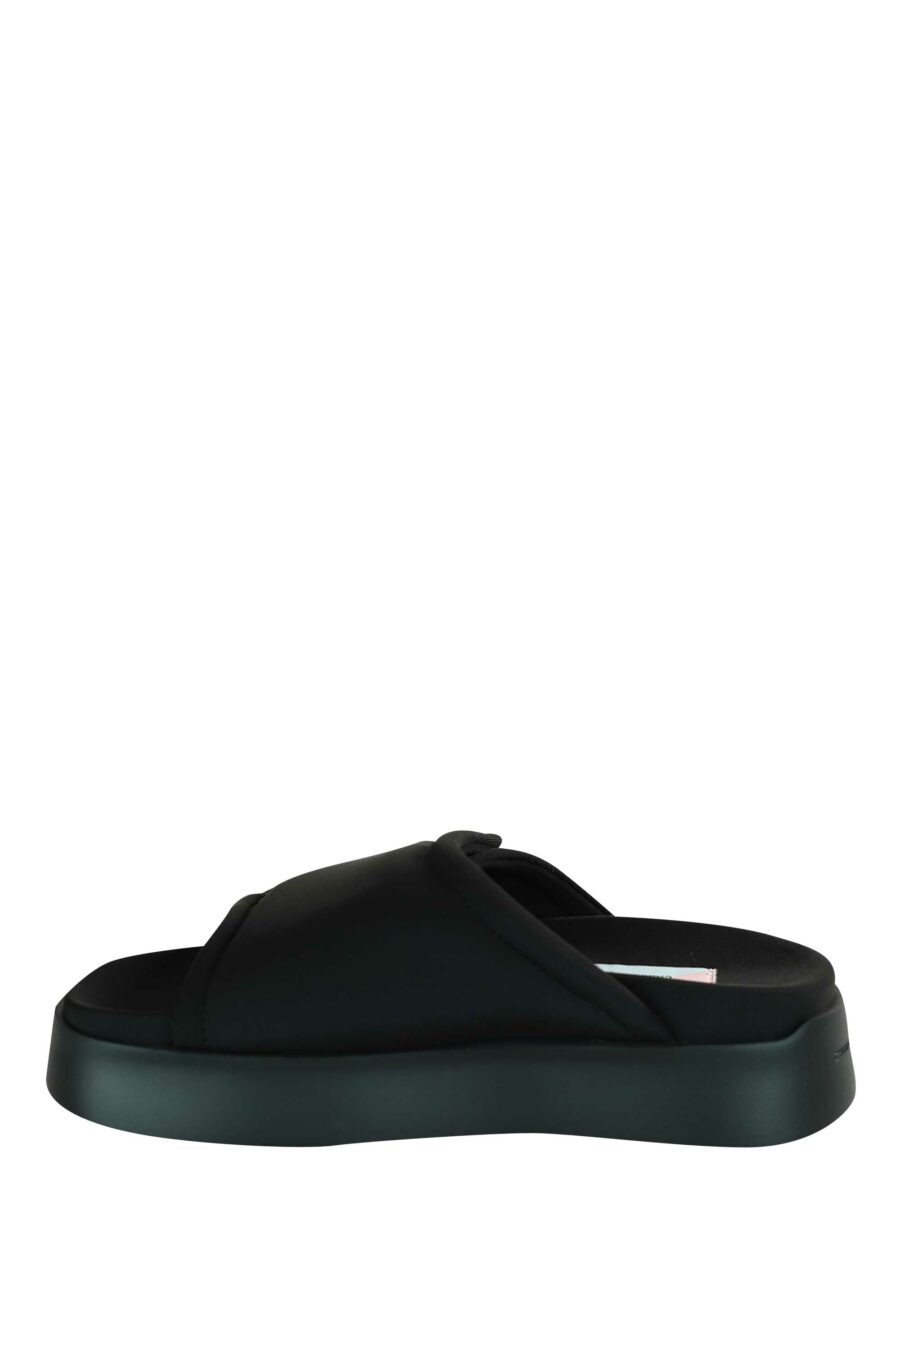 Sandales noires avec velcro et plateforme noire - 8059482630771 3